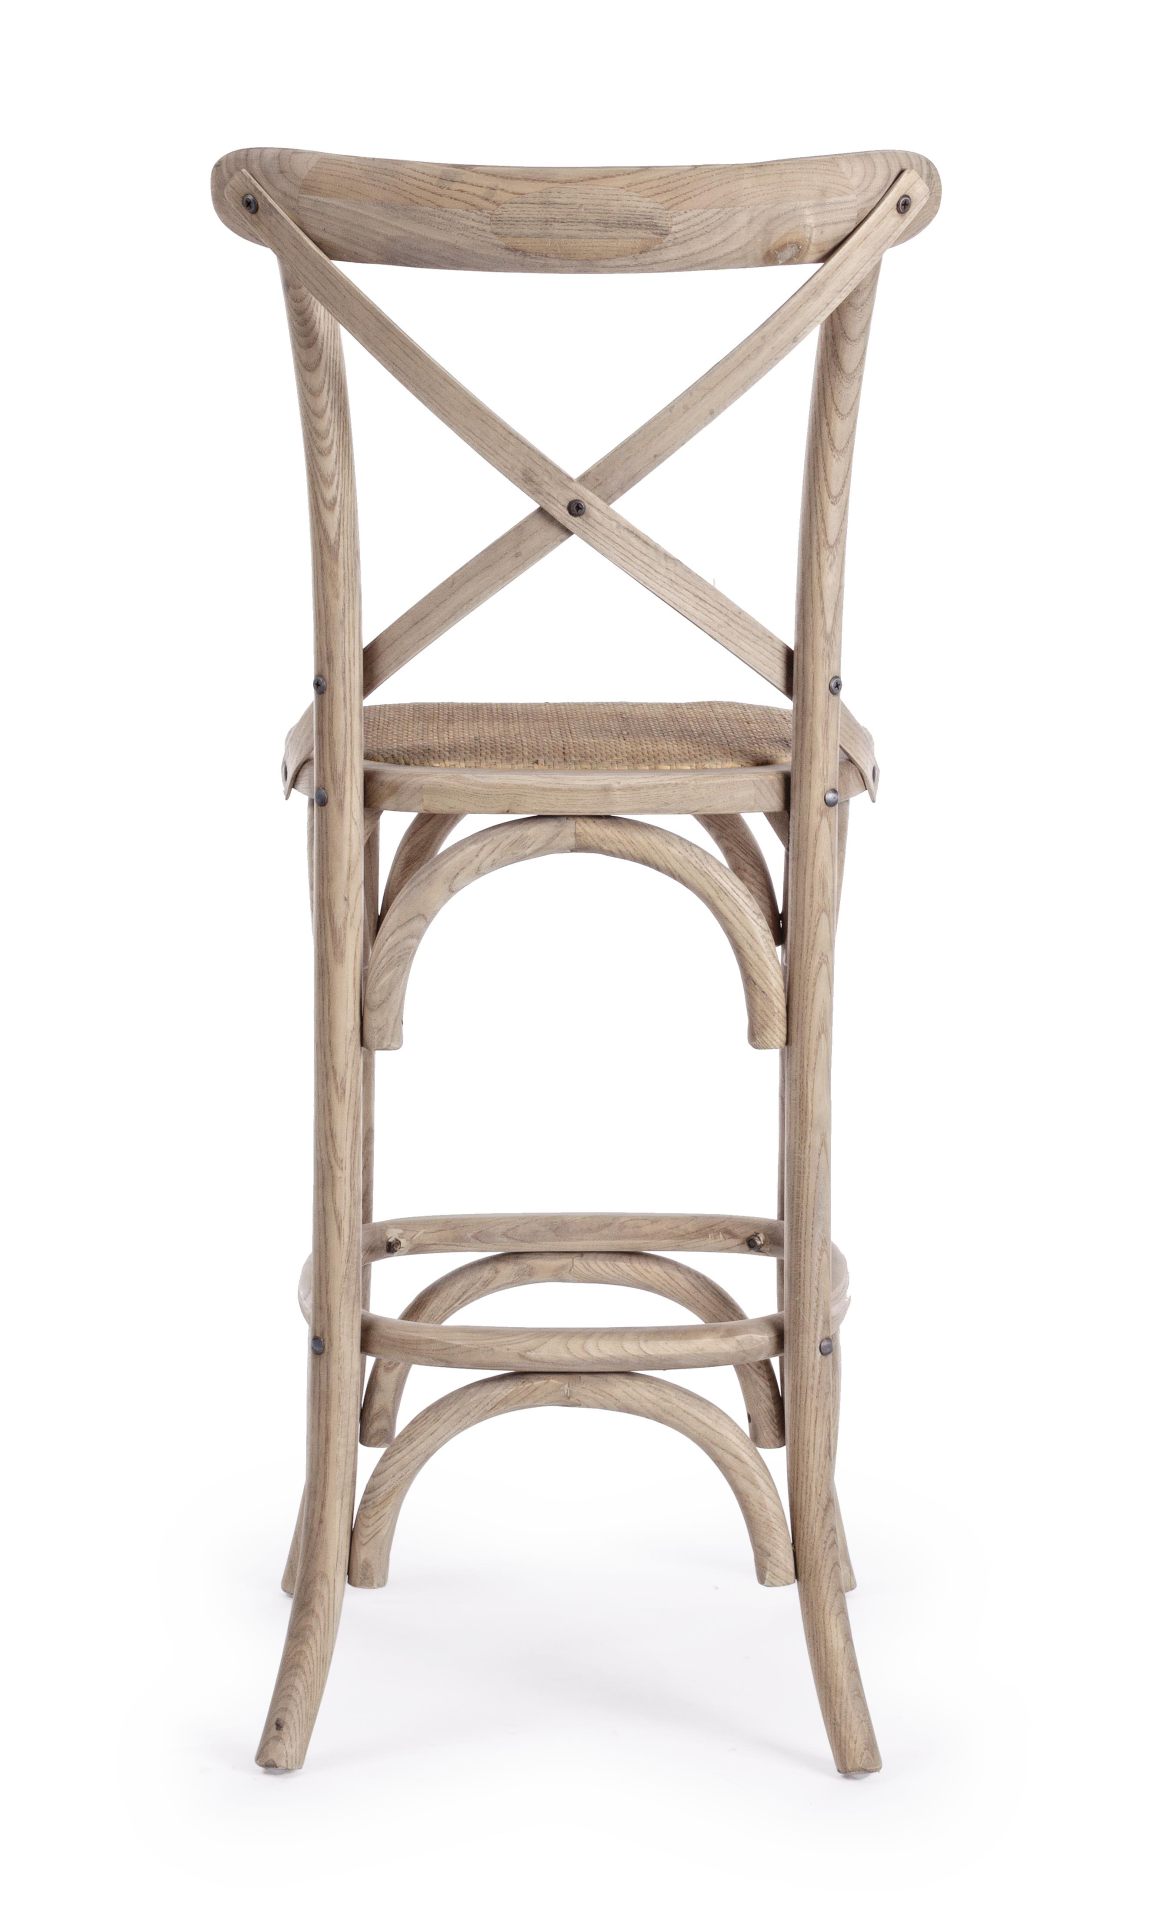 Der Barhocker Cross überzeugt mit seinem klassischen Design. Gefertigt wurde er aus Ulmenholz, welches einen natürlichen Farbton besitzt. Die Sitzfläche ist aus natürlichem Ratten Geflecht. Die Sitzhöhe des Hockers beträgt 73 cm.